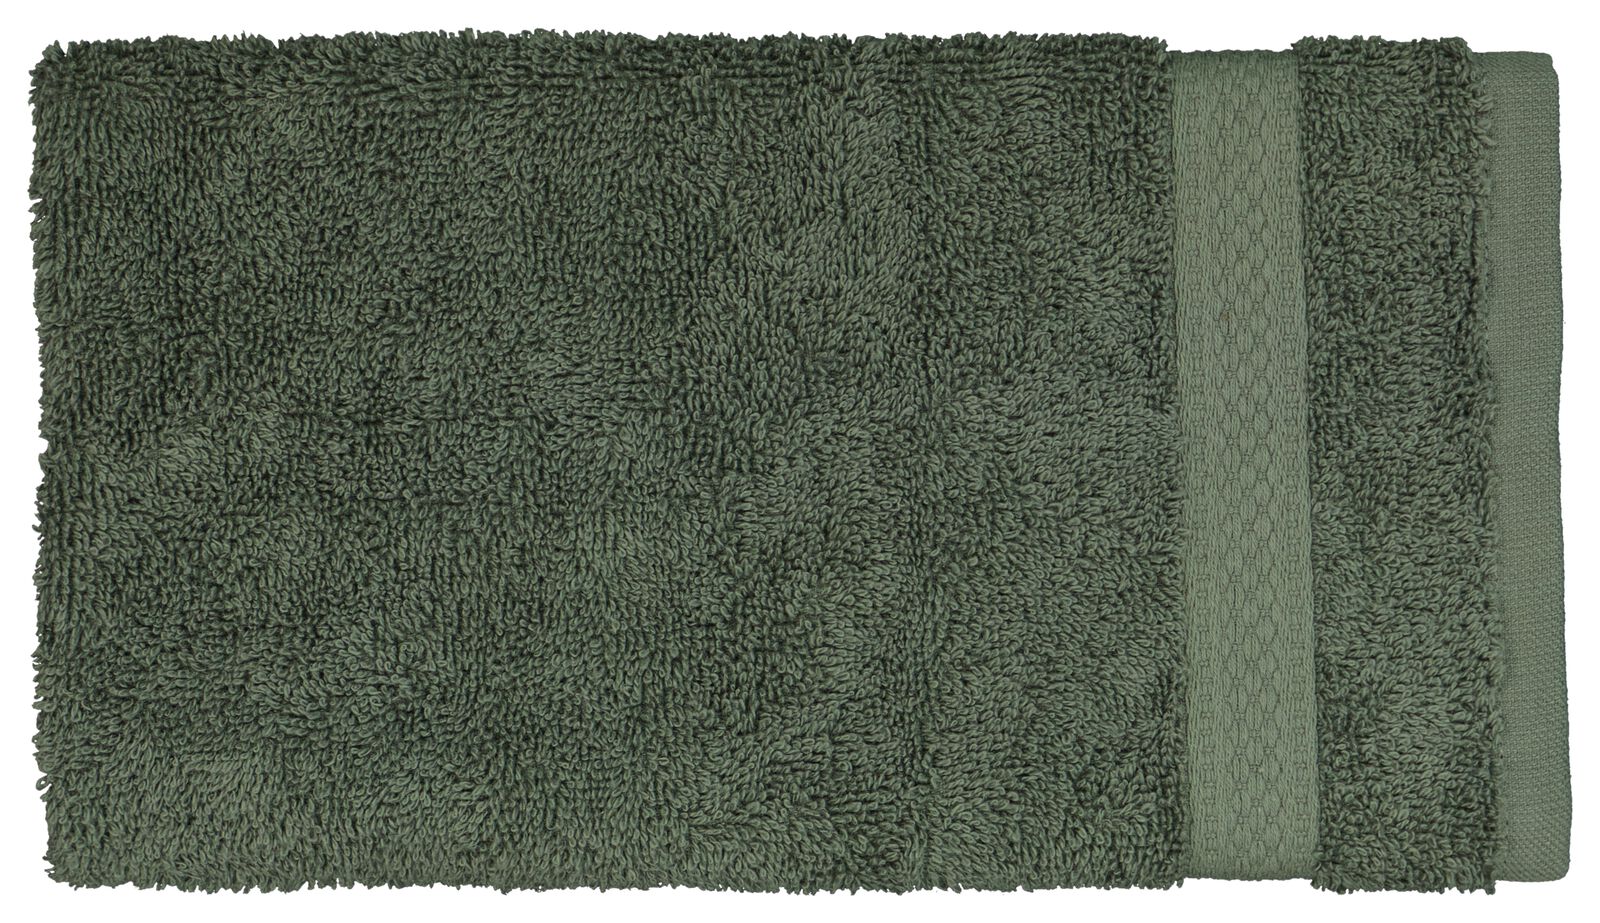 Gästehandtuch, 30 x 55 cm, schwere Qualität, graugrün graugrün Gästehandtuch - 5200701 - HEMA